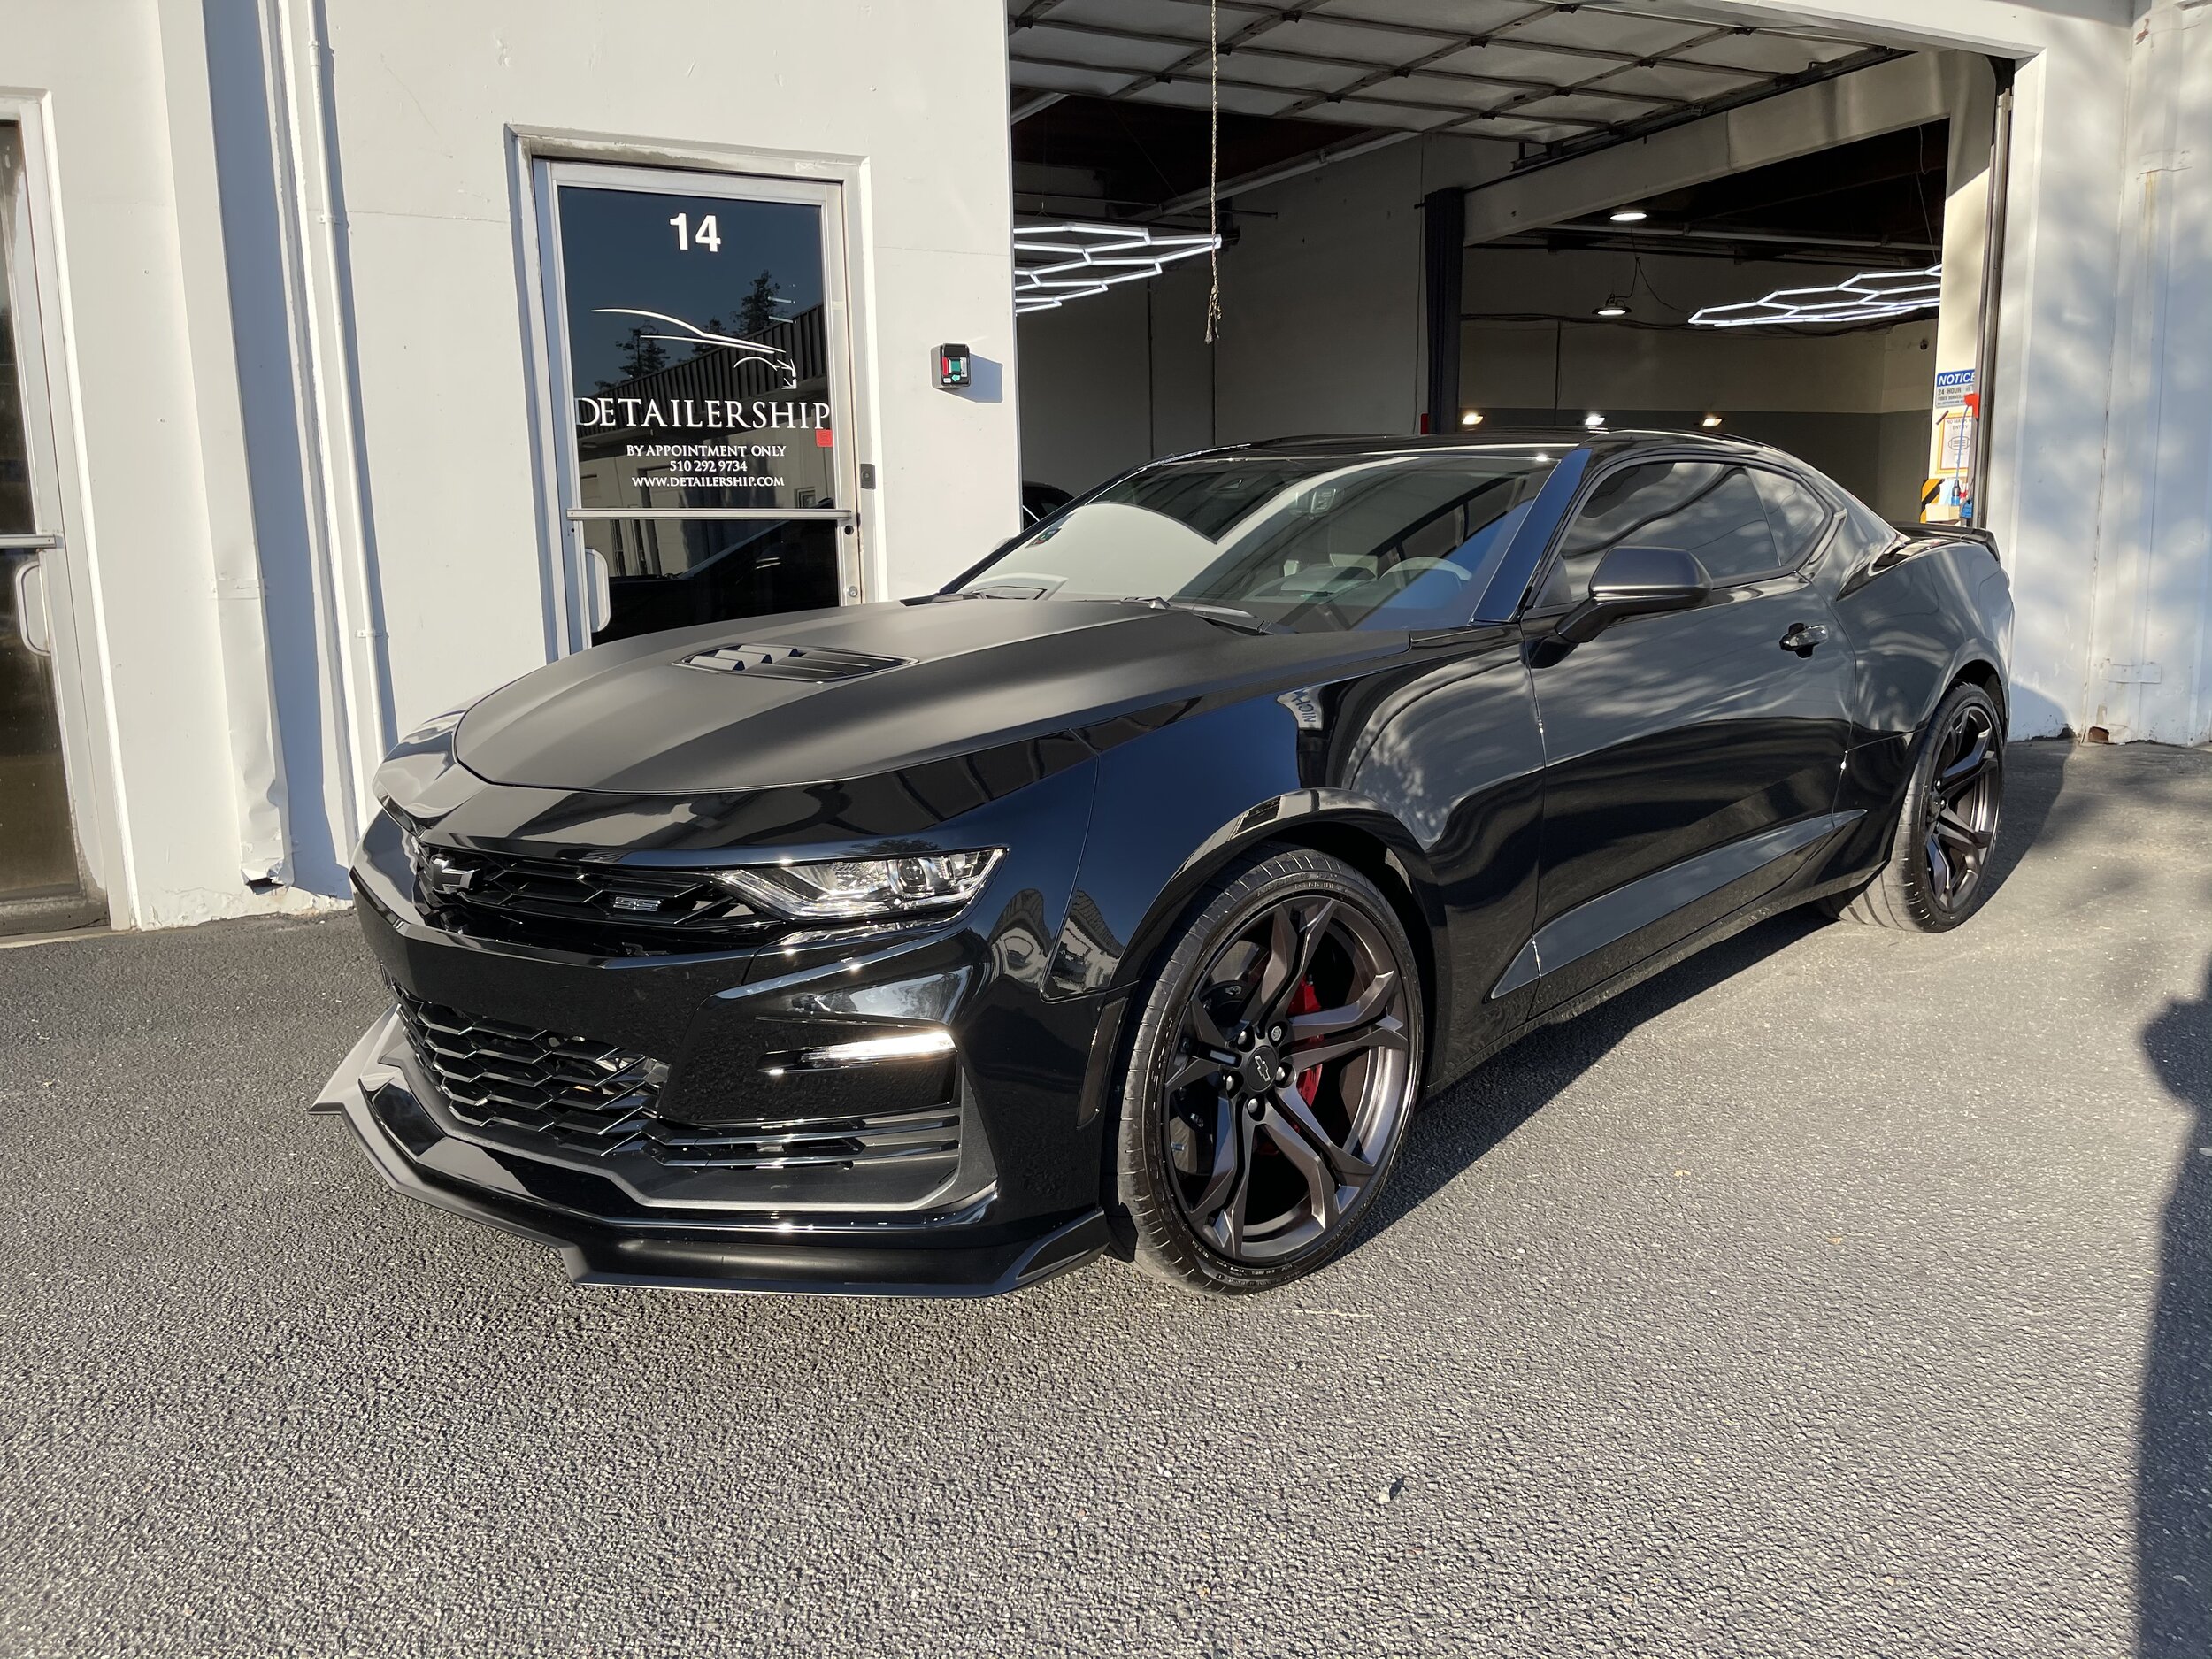 2021 Chevrolet Camaro 1le Black — Detailership™